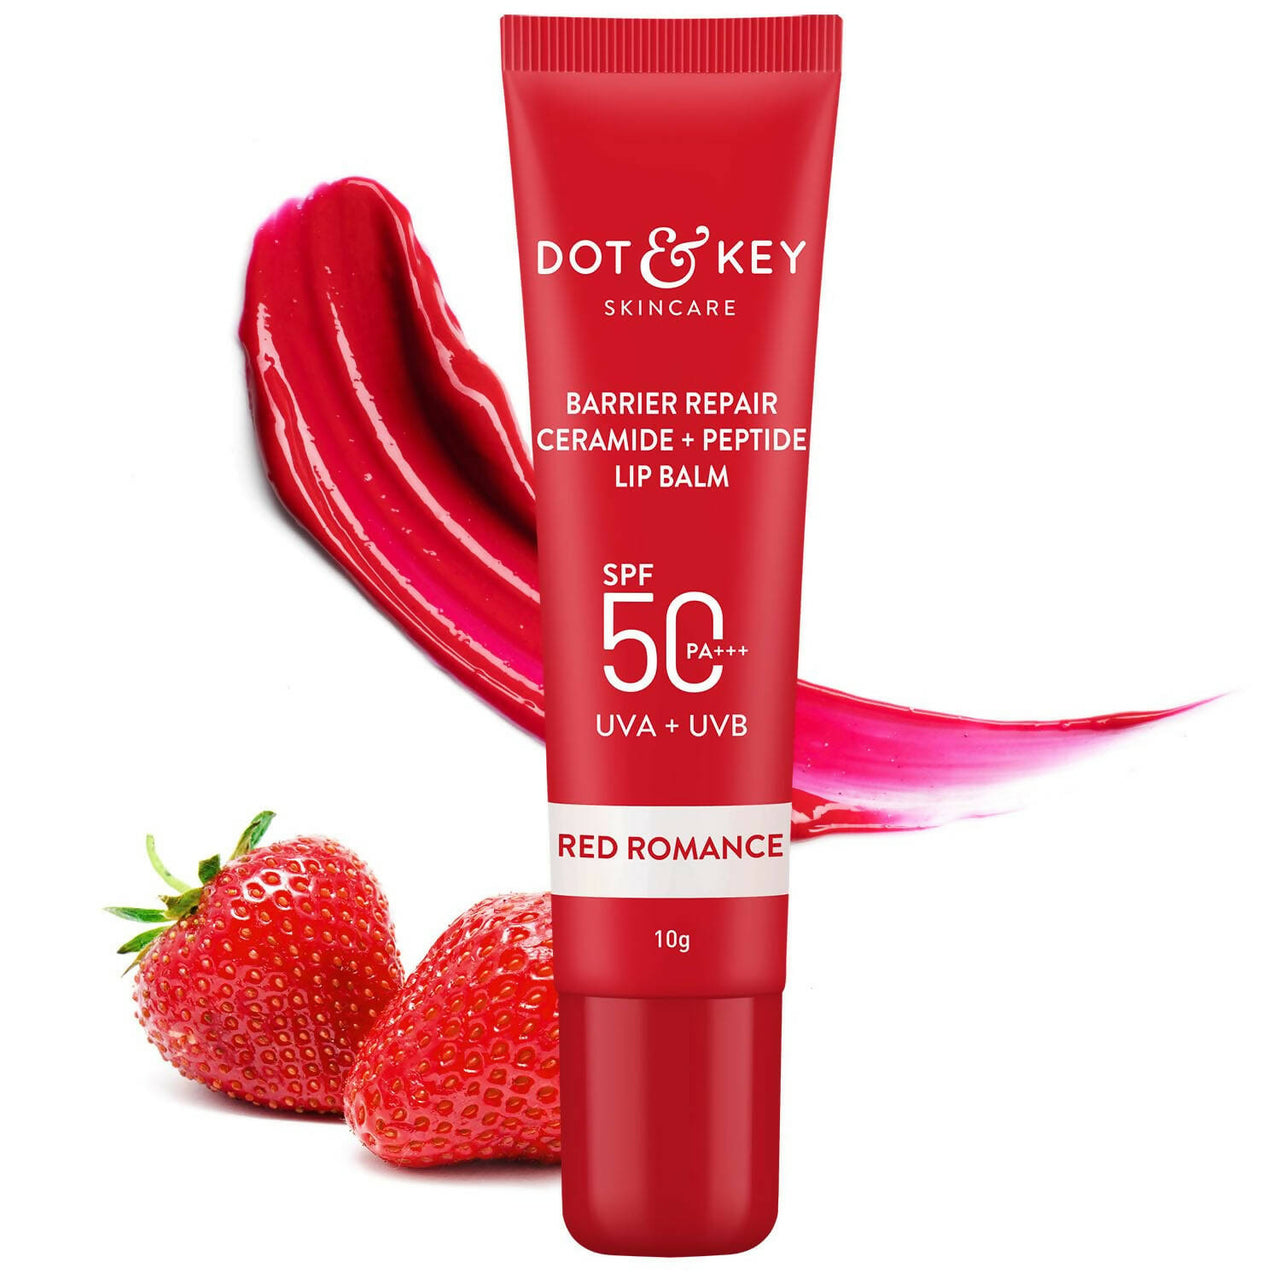 Dot & Key Barrier Repair Ceramide & Peptide SPF 50 Lip Balm - Red Romance - Distacart